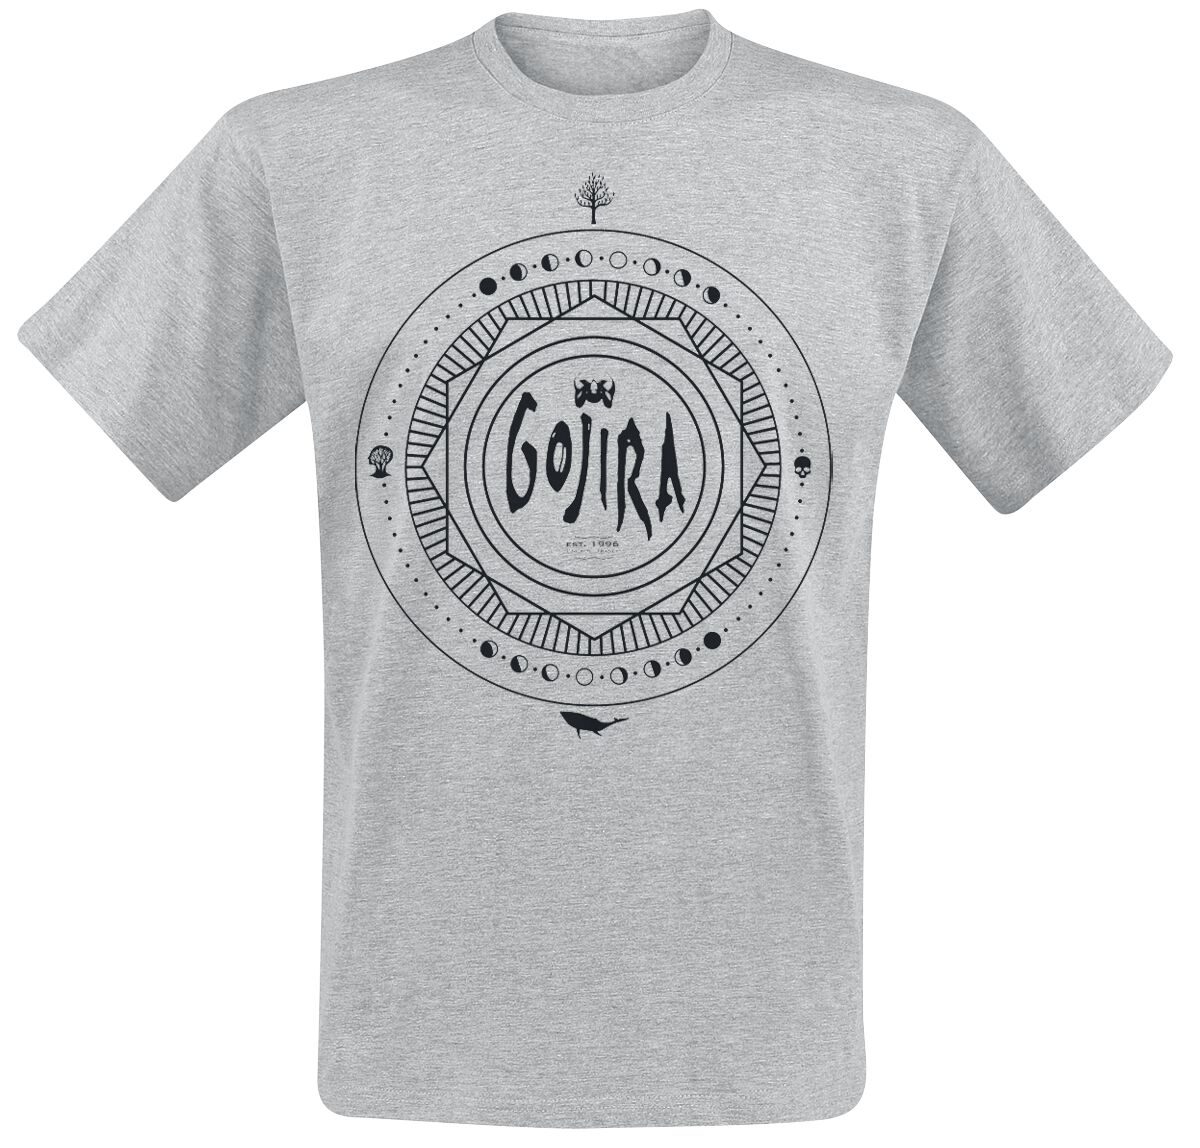 Gojira T-Shirt - Moon Phases - S bis XL - für Männer - Größe XL - grau meliert  - Lizenziertes Merchandise!